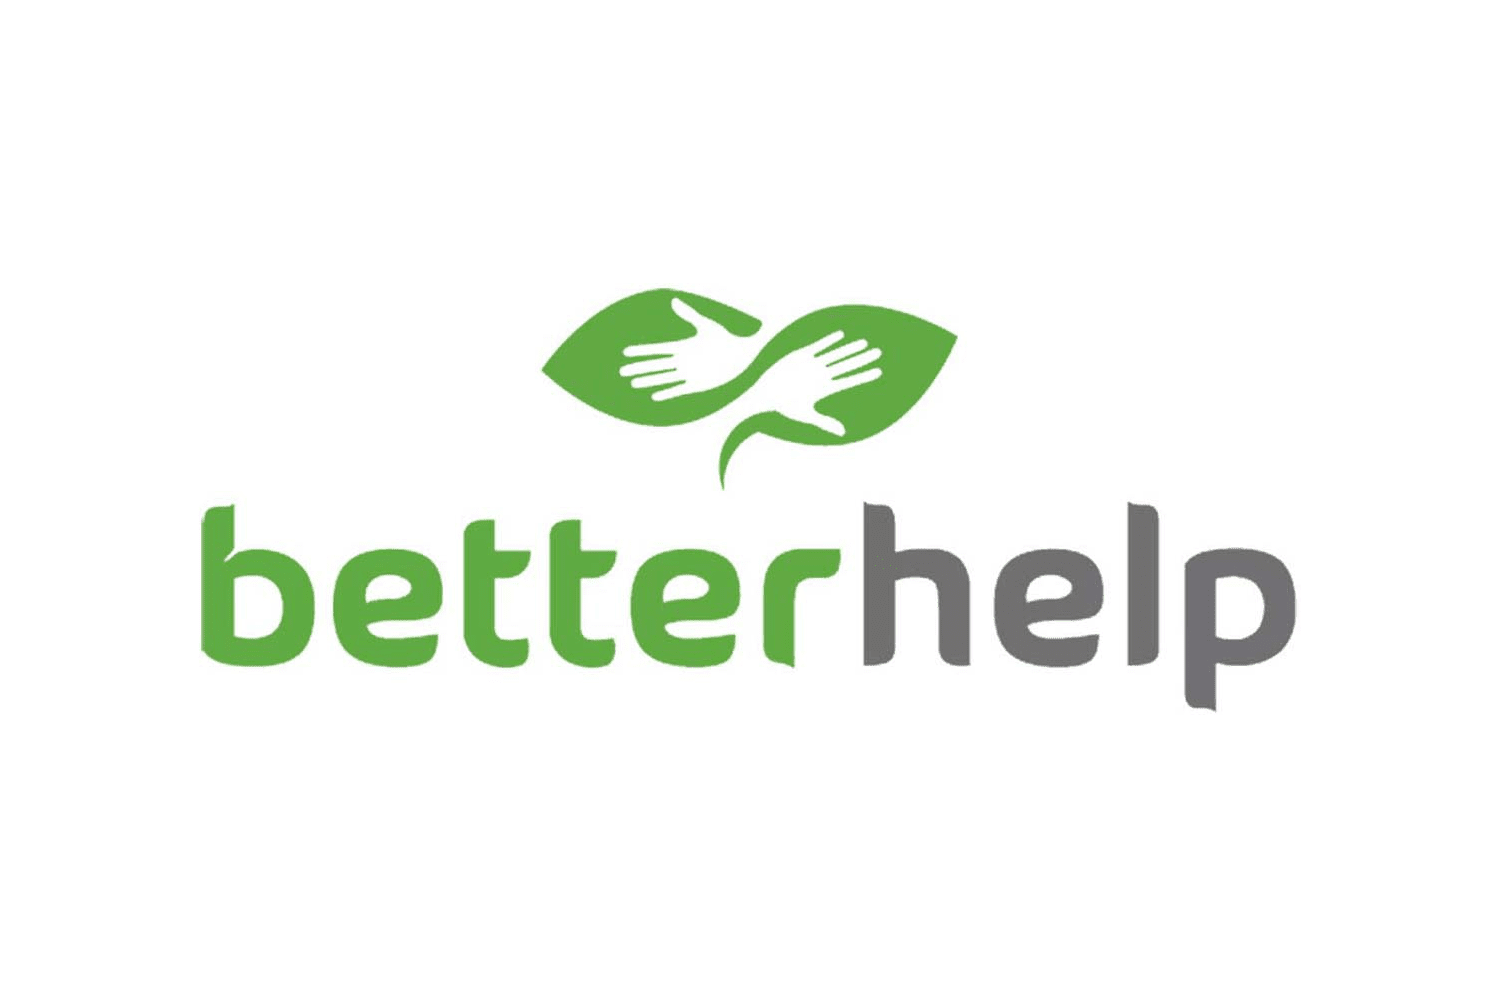 BetterHelp logo